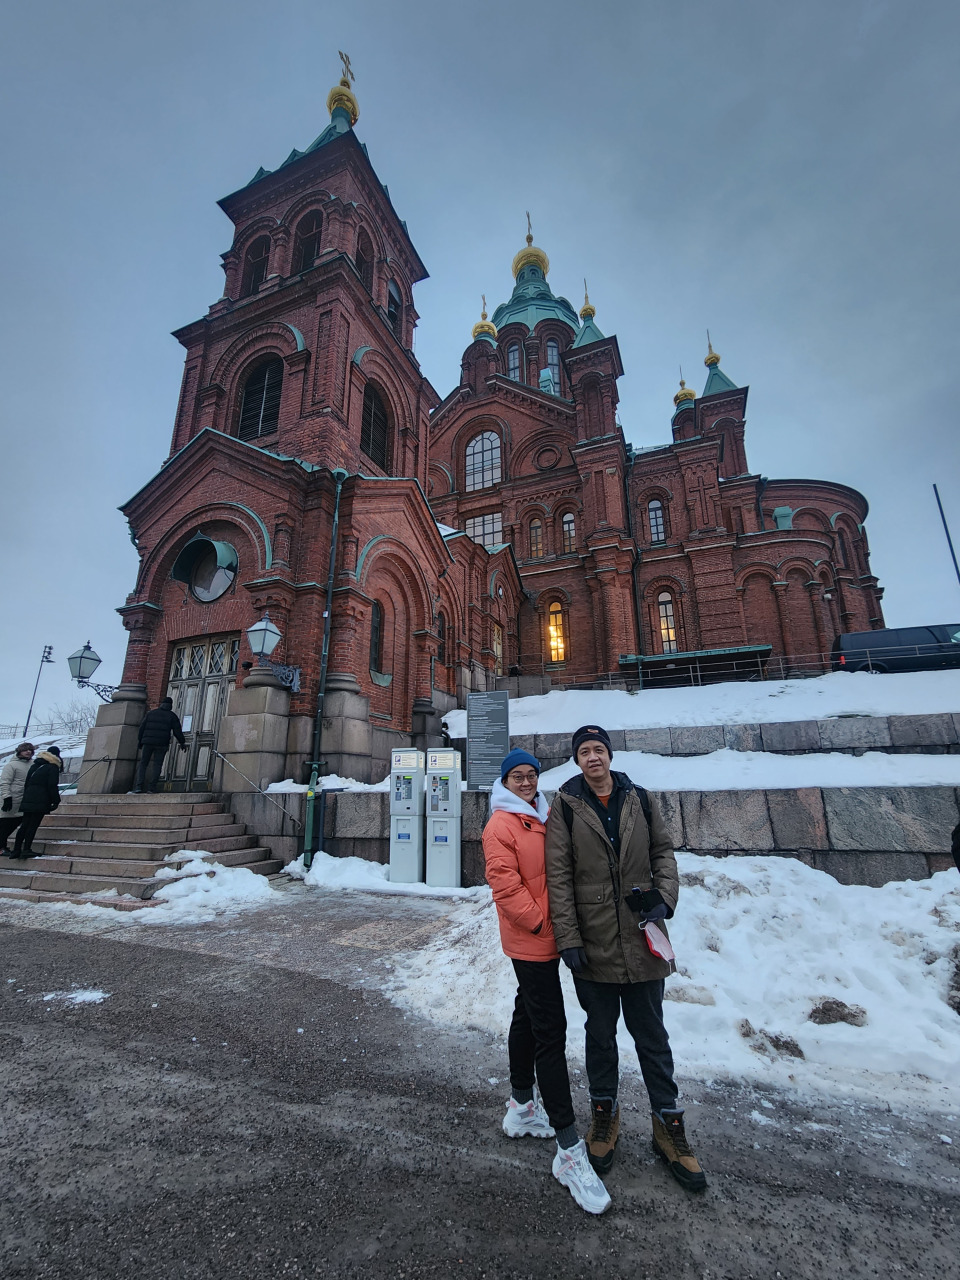 ■位于港口山坡上的乌斯佩斯基大教堂有着红砖筑成的外墙，是赫尔辛基独有的一抹华丽色彩。这座俄罗斯东正教堂是北欧最大的东正教堂，也是俄罗斯在芬兰历史上留下的最清晰印记之一。